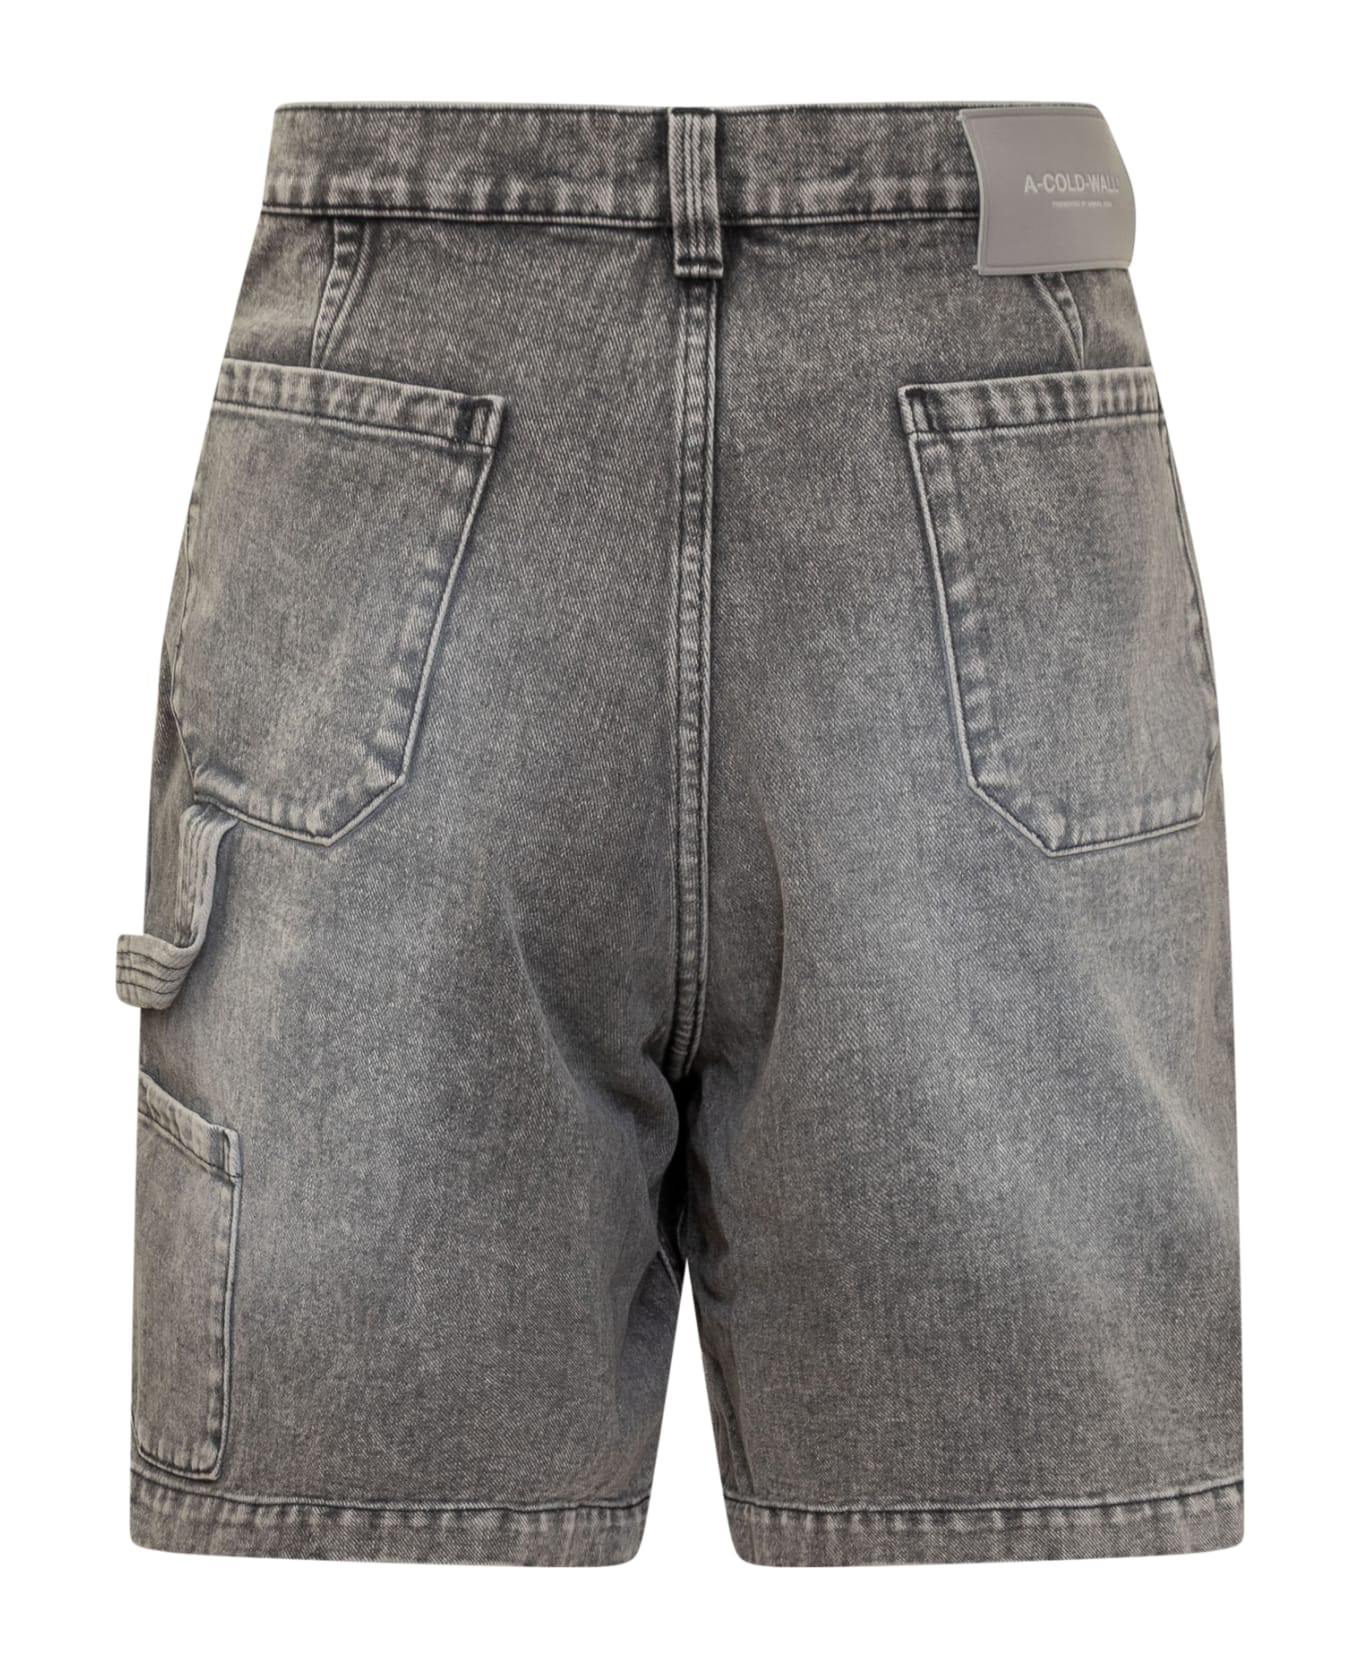 A-COLD-WALL Denim Shorts - BLACK/WHITE ショートパンツ